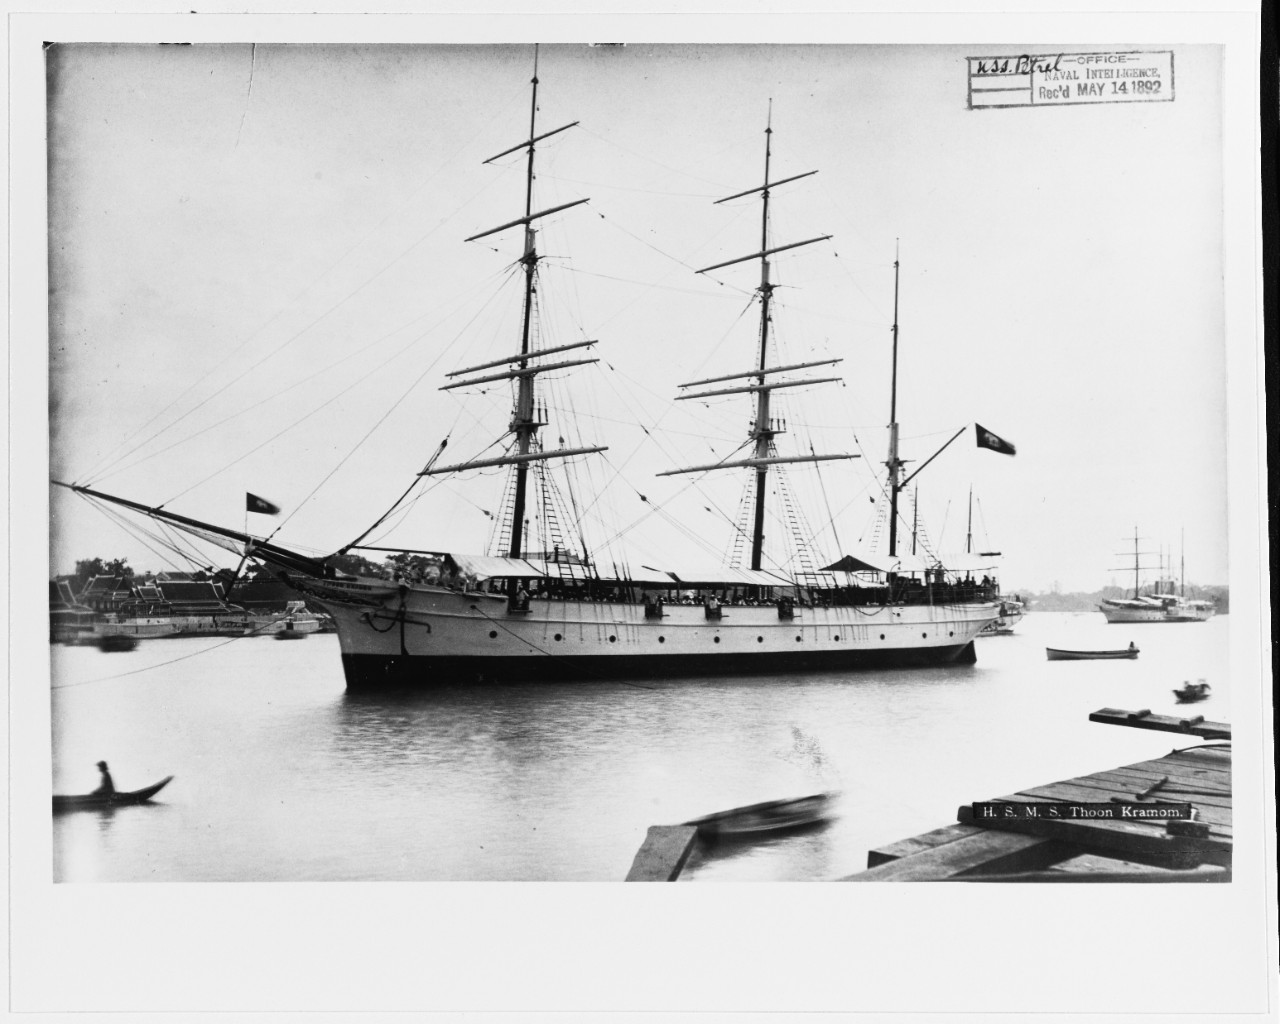 THOON KRAMOM (Thai Training ship, 1864.)